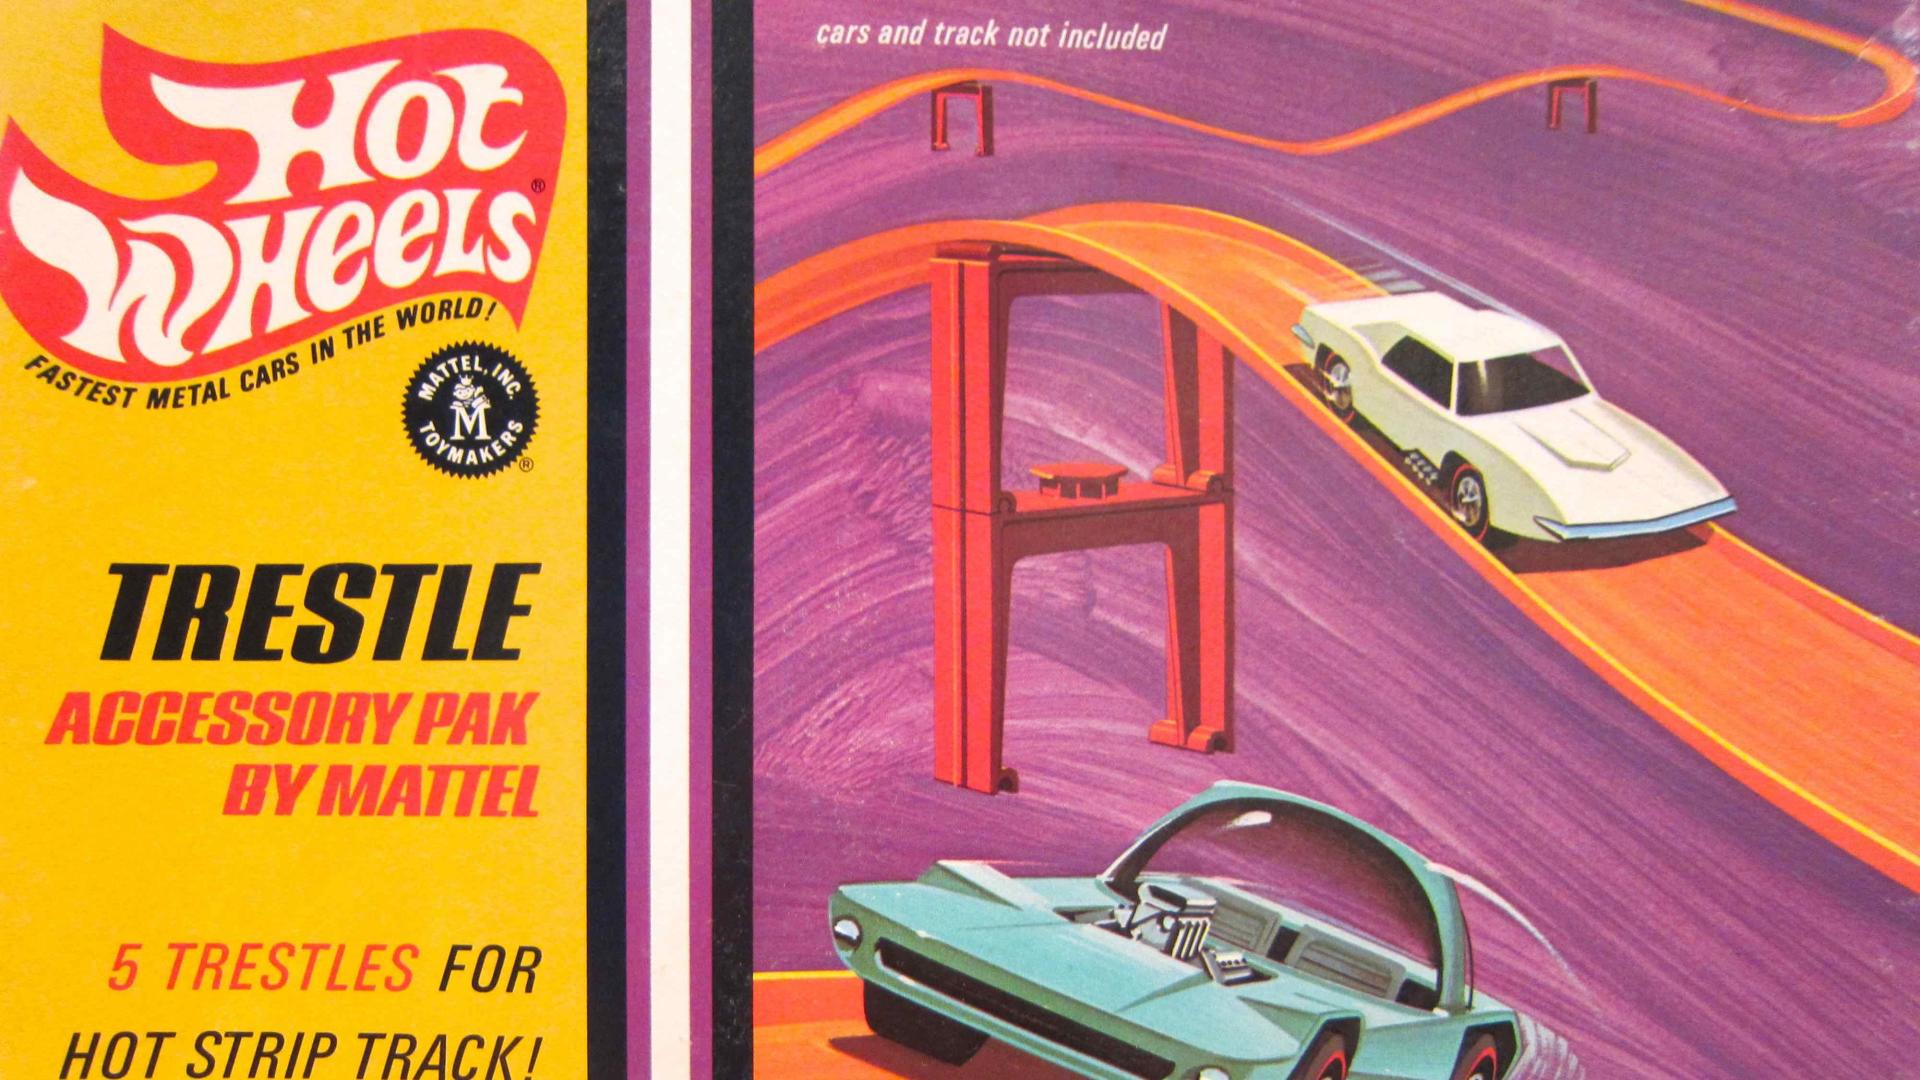 1969 年 hot wheels 风火轮玩具车电视广告